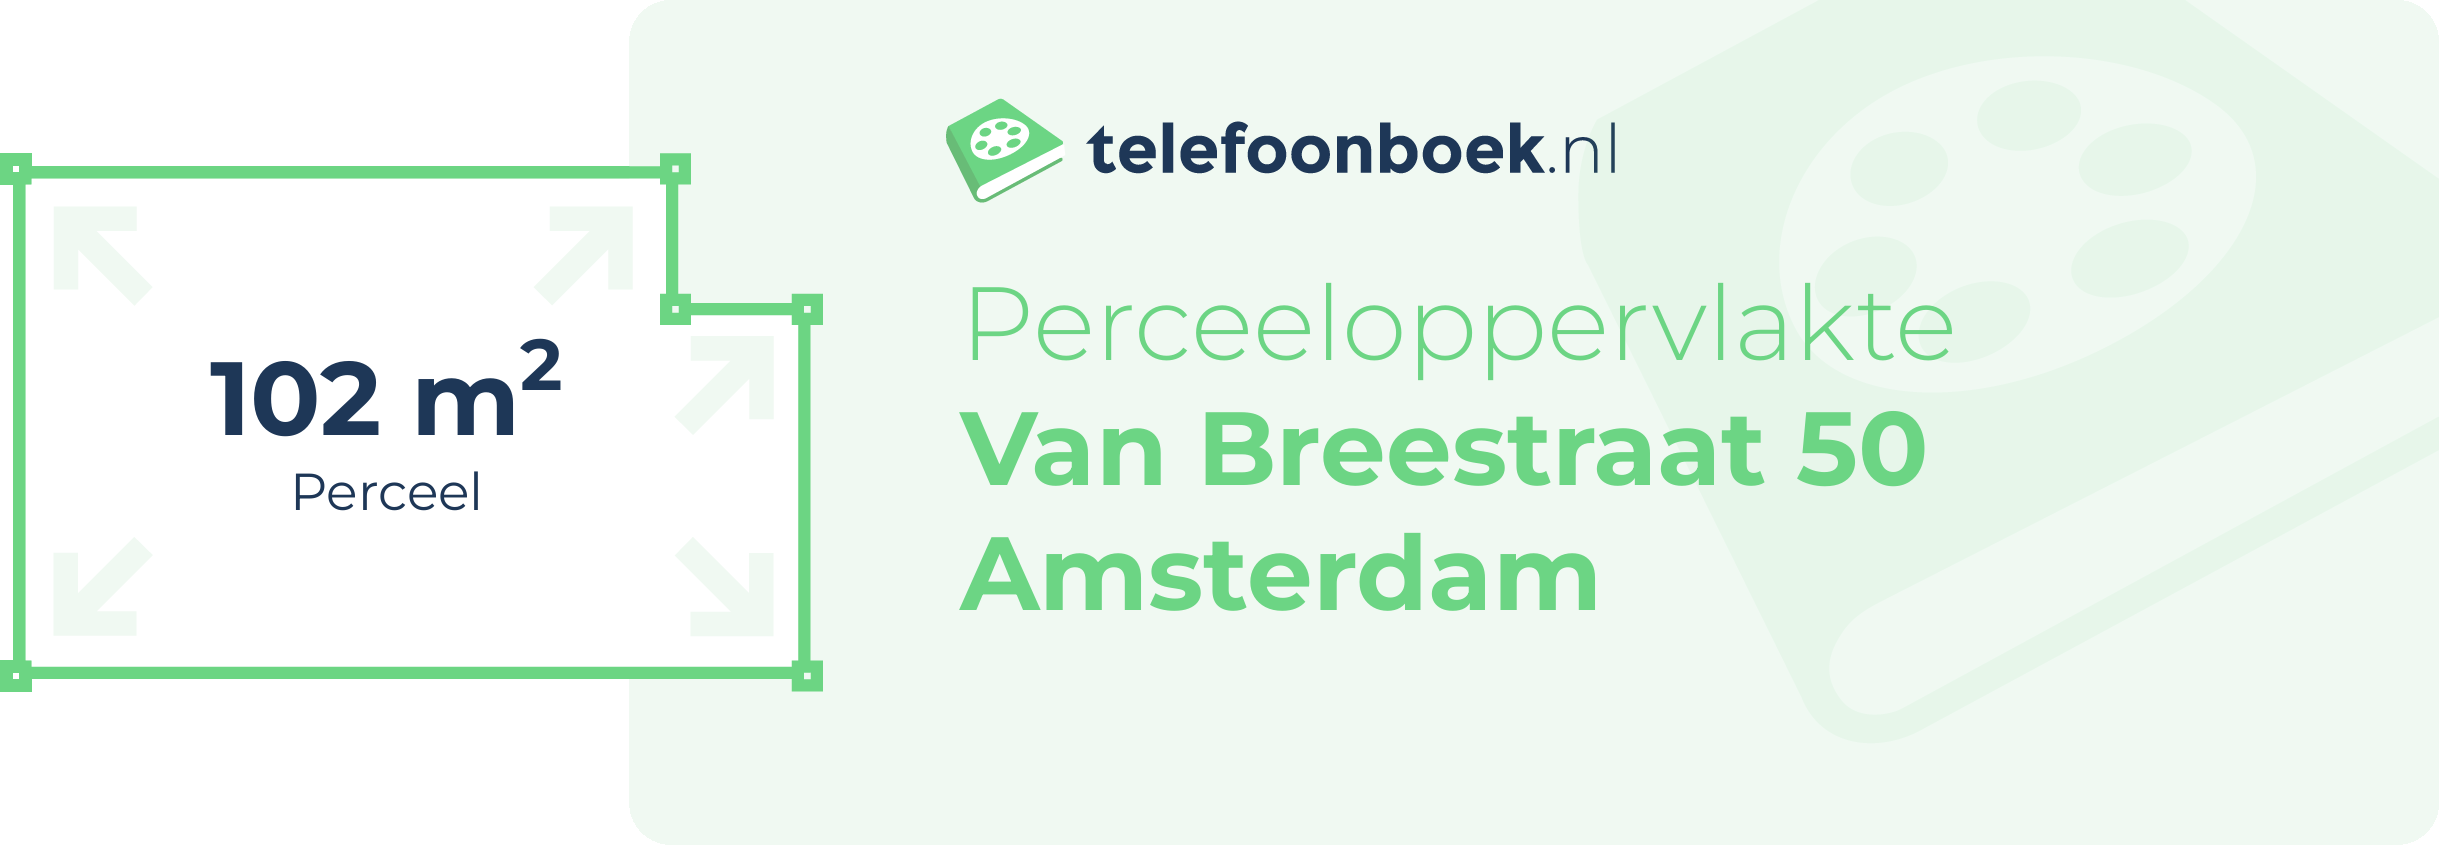 Perceeloppervlakte Van Breestraat 50 Amsterdam